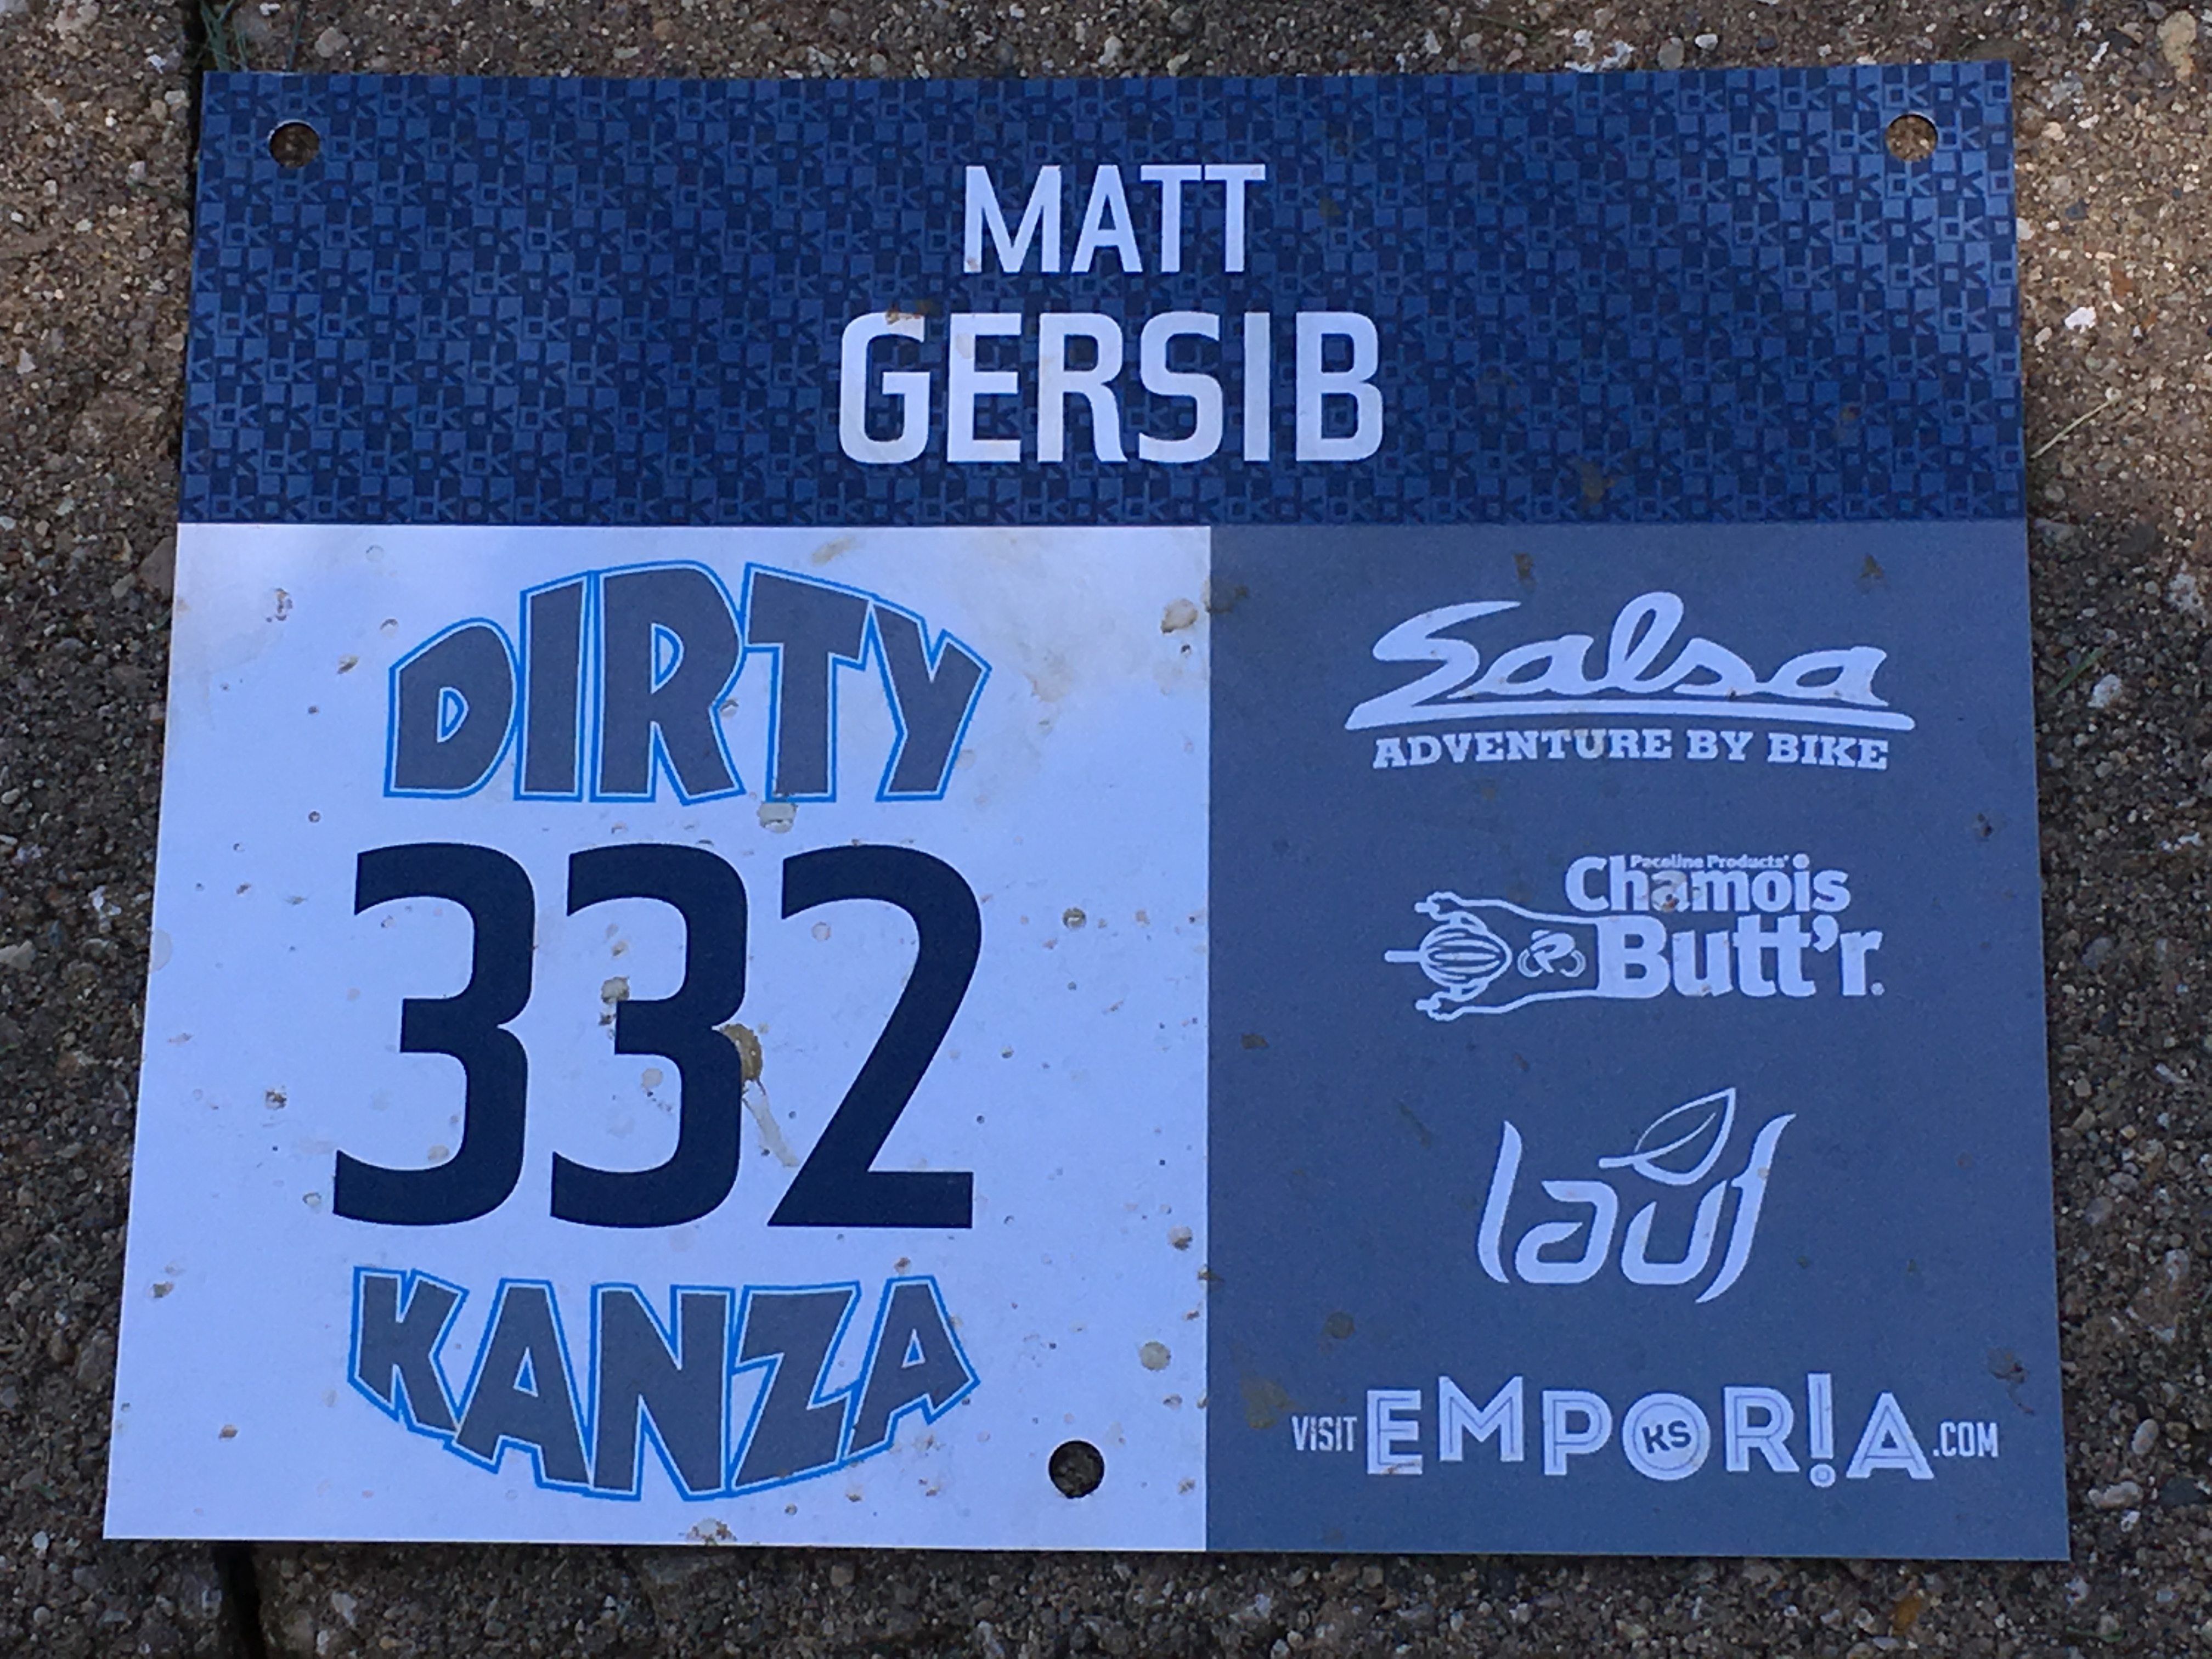 2017 Dirty Kanza 200 number plate, Matt Gersib